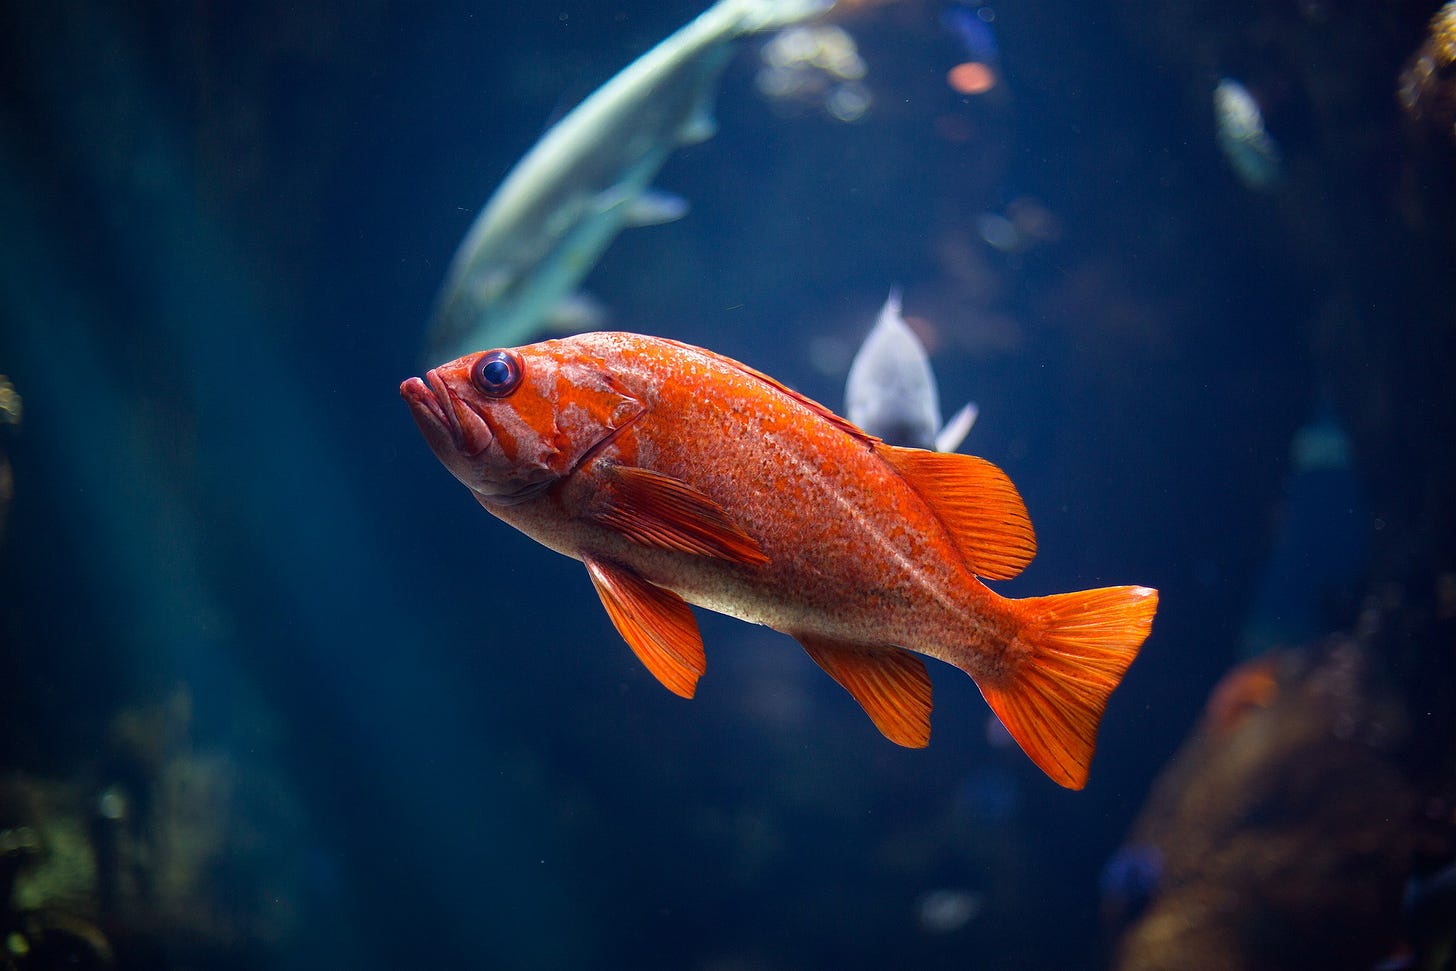 Paesaggio sottomarino con sfondo blu sfocato e in primo piano un pesce di color arancione messo in obliquo da destra verso l'angolo sinistro in alto, con l'occhio color blu.